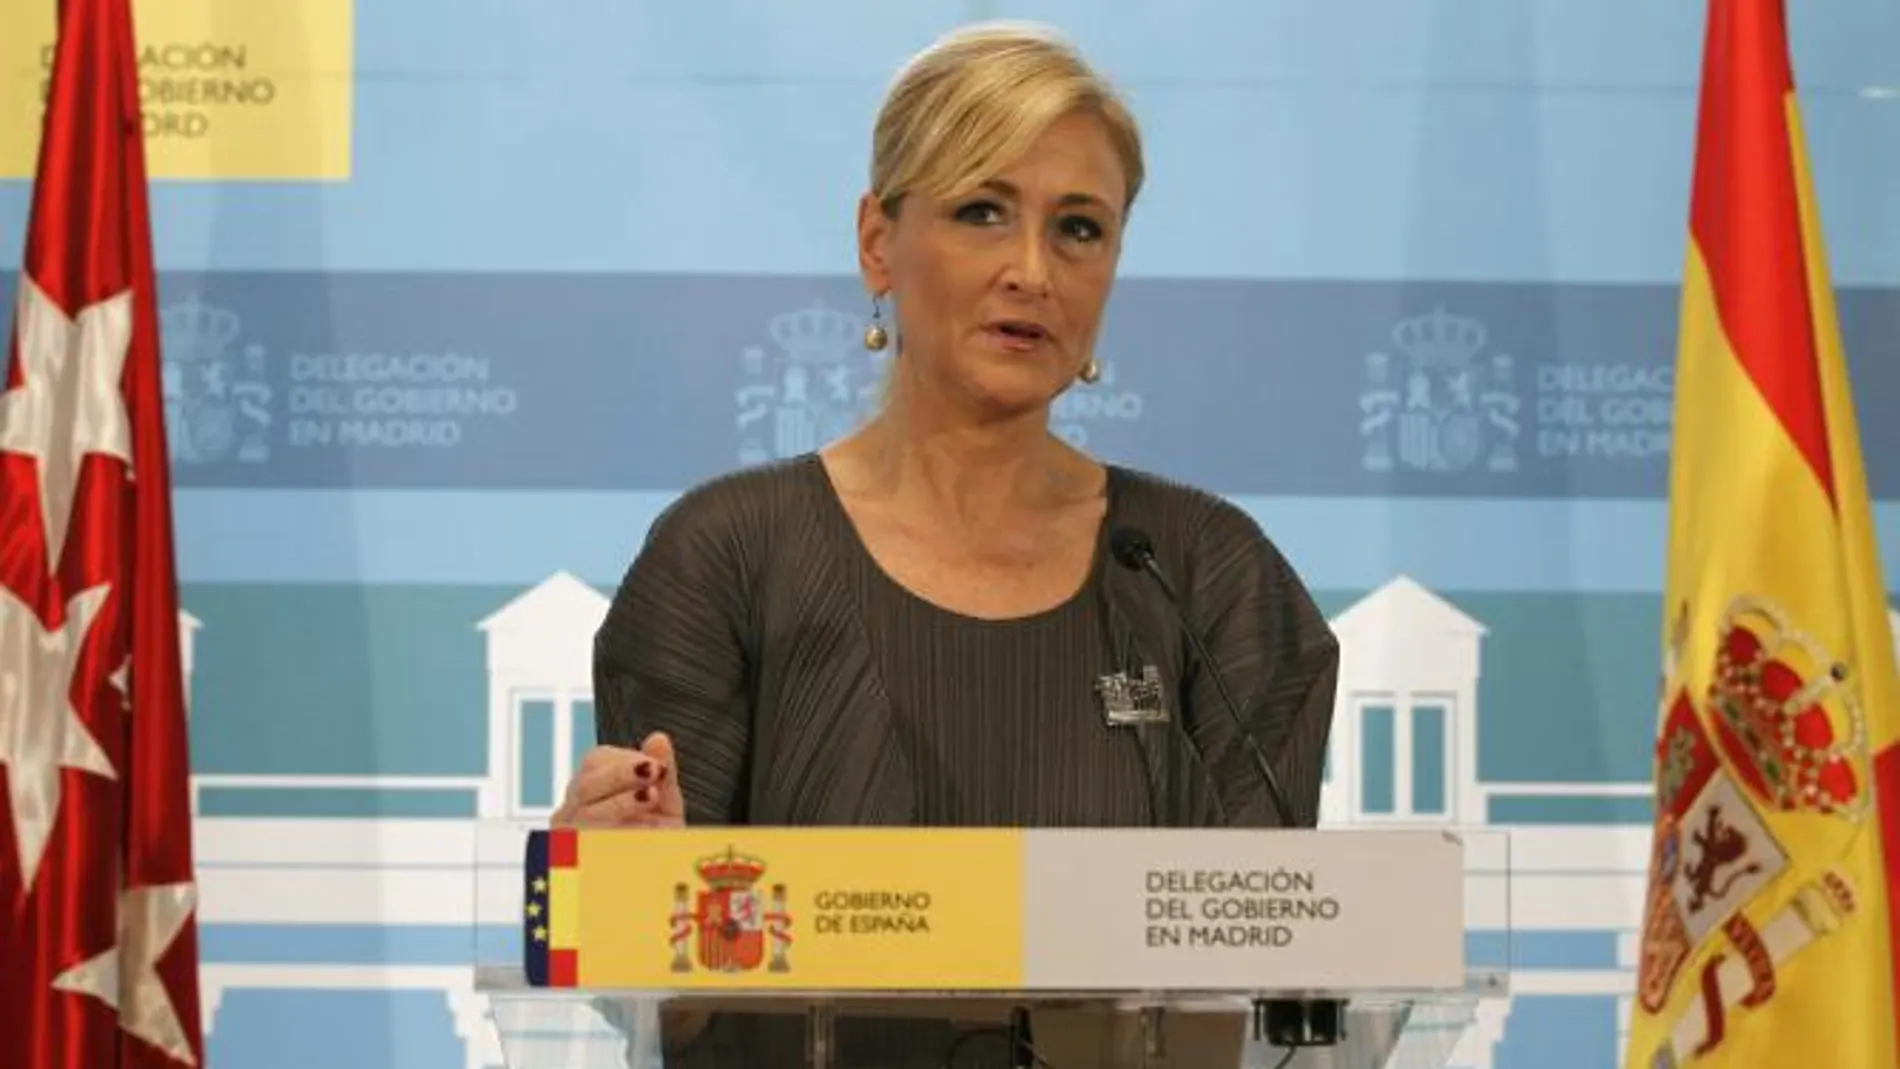 La ex presidenta de la Comunidad de Madrid Cristina Cifuentes